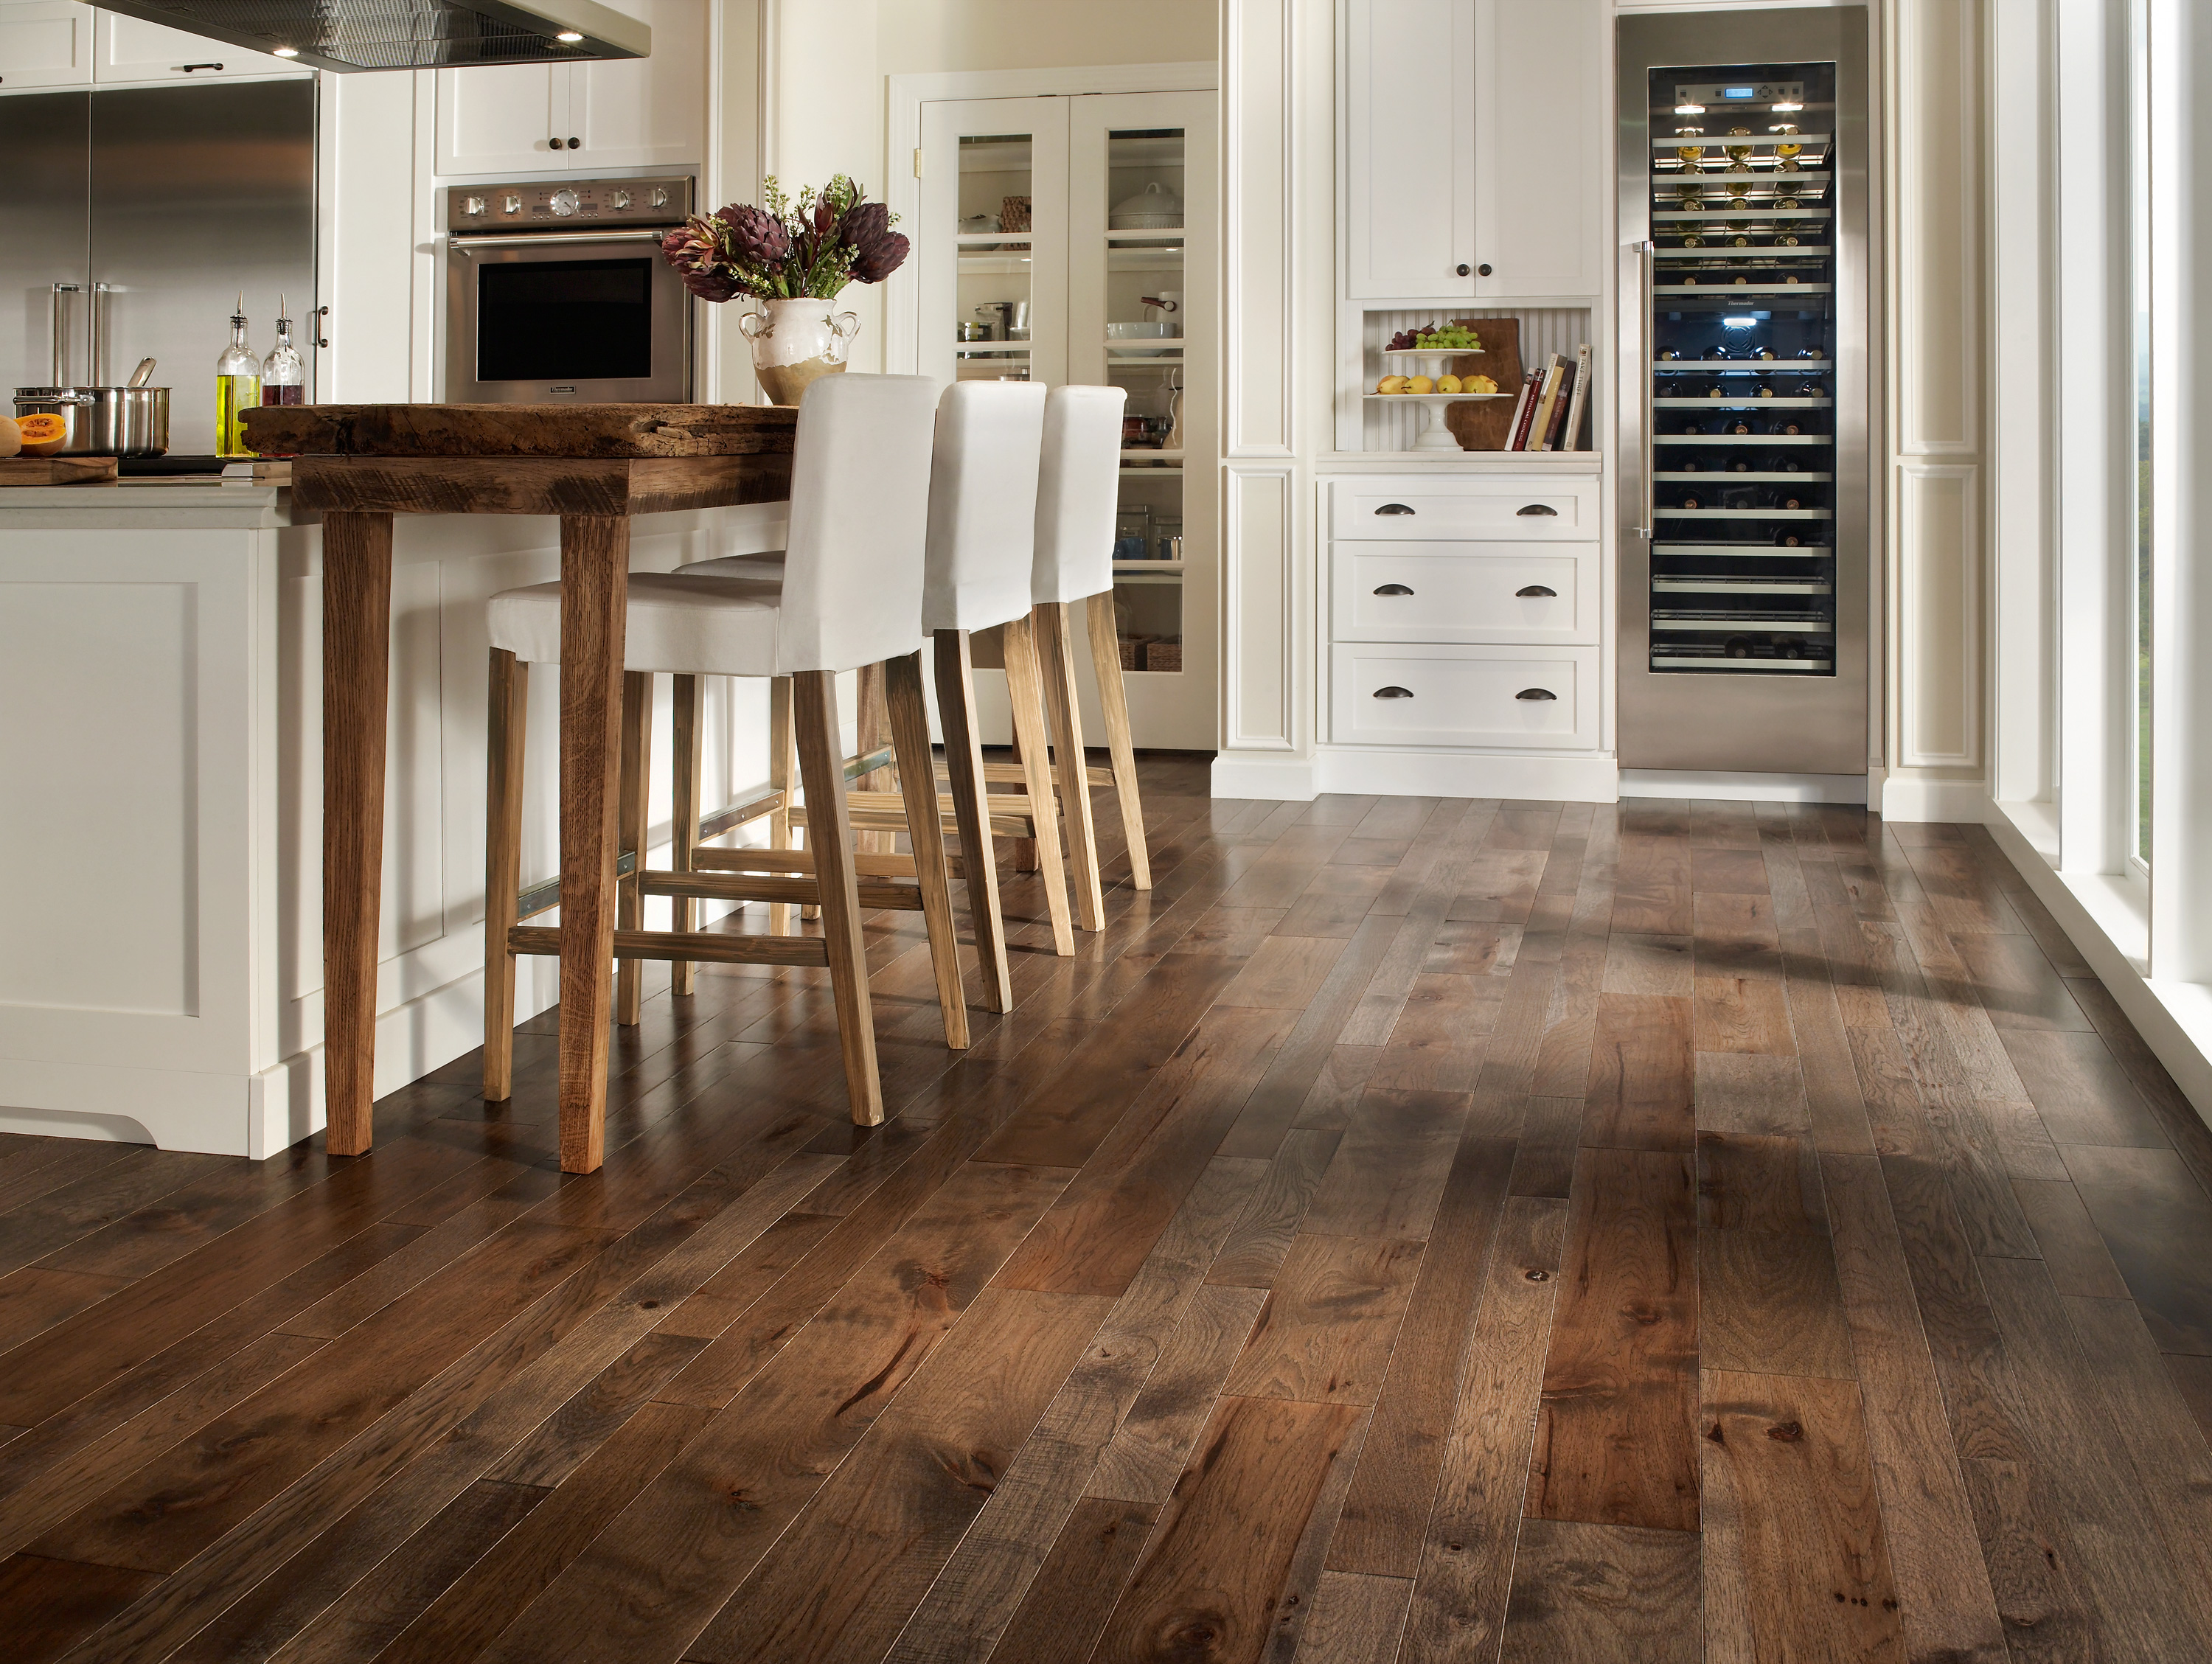 durable hardwood flooring surprising most durable laminate flooring hardwood floors homesfeed kitchen  wood floor table VSEFSAE